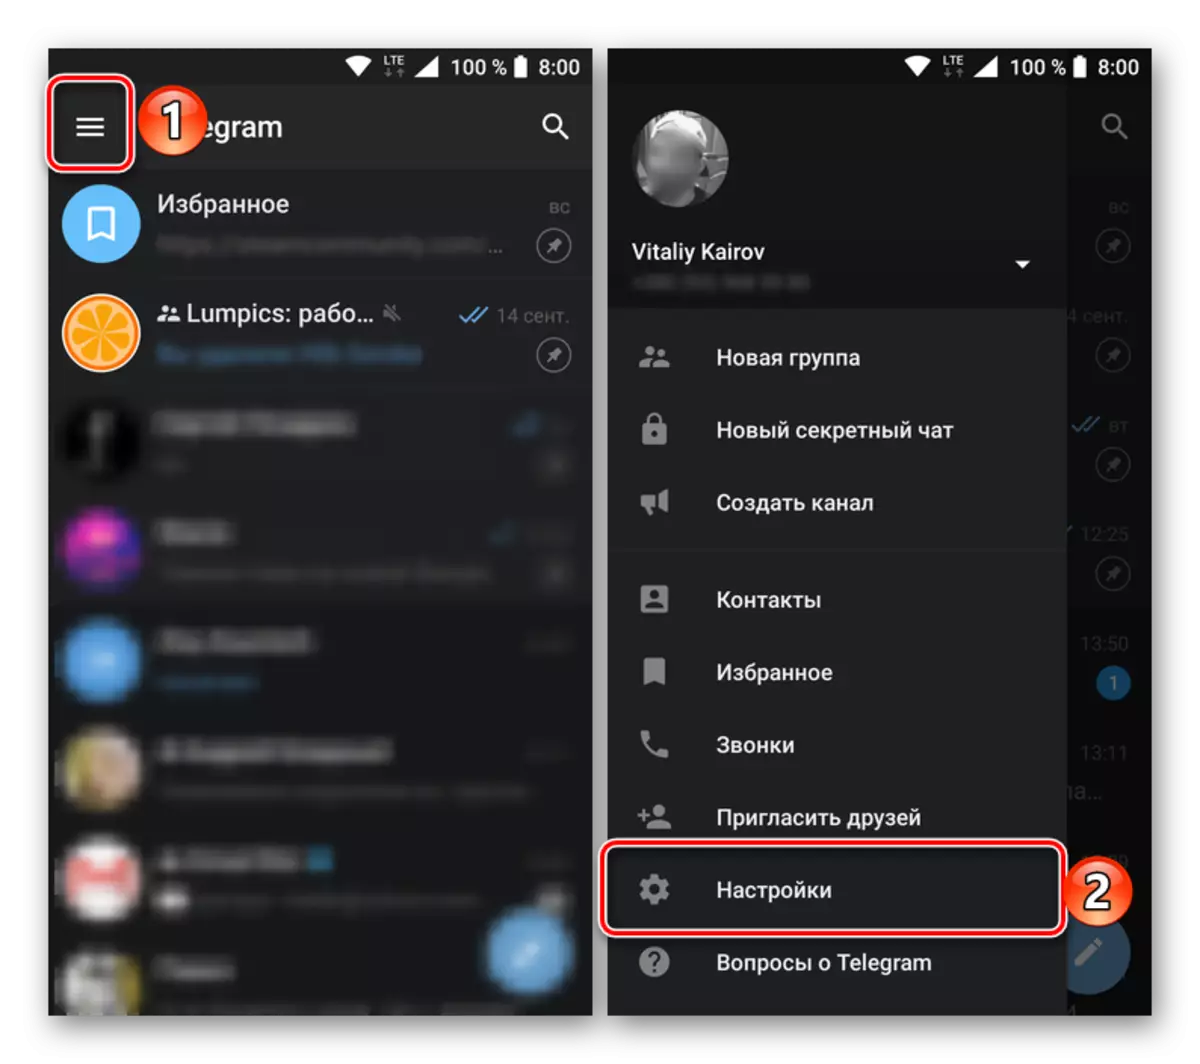 Iftaħ il-menu tas-settings fil-verżjoni mobbli tal-applikazzjoni telegramma għall-Android